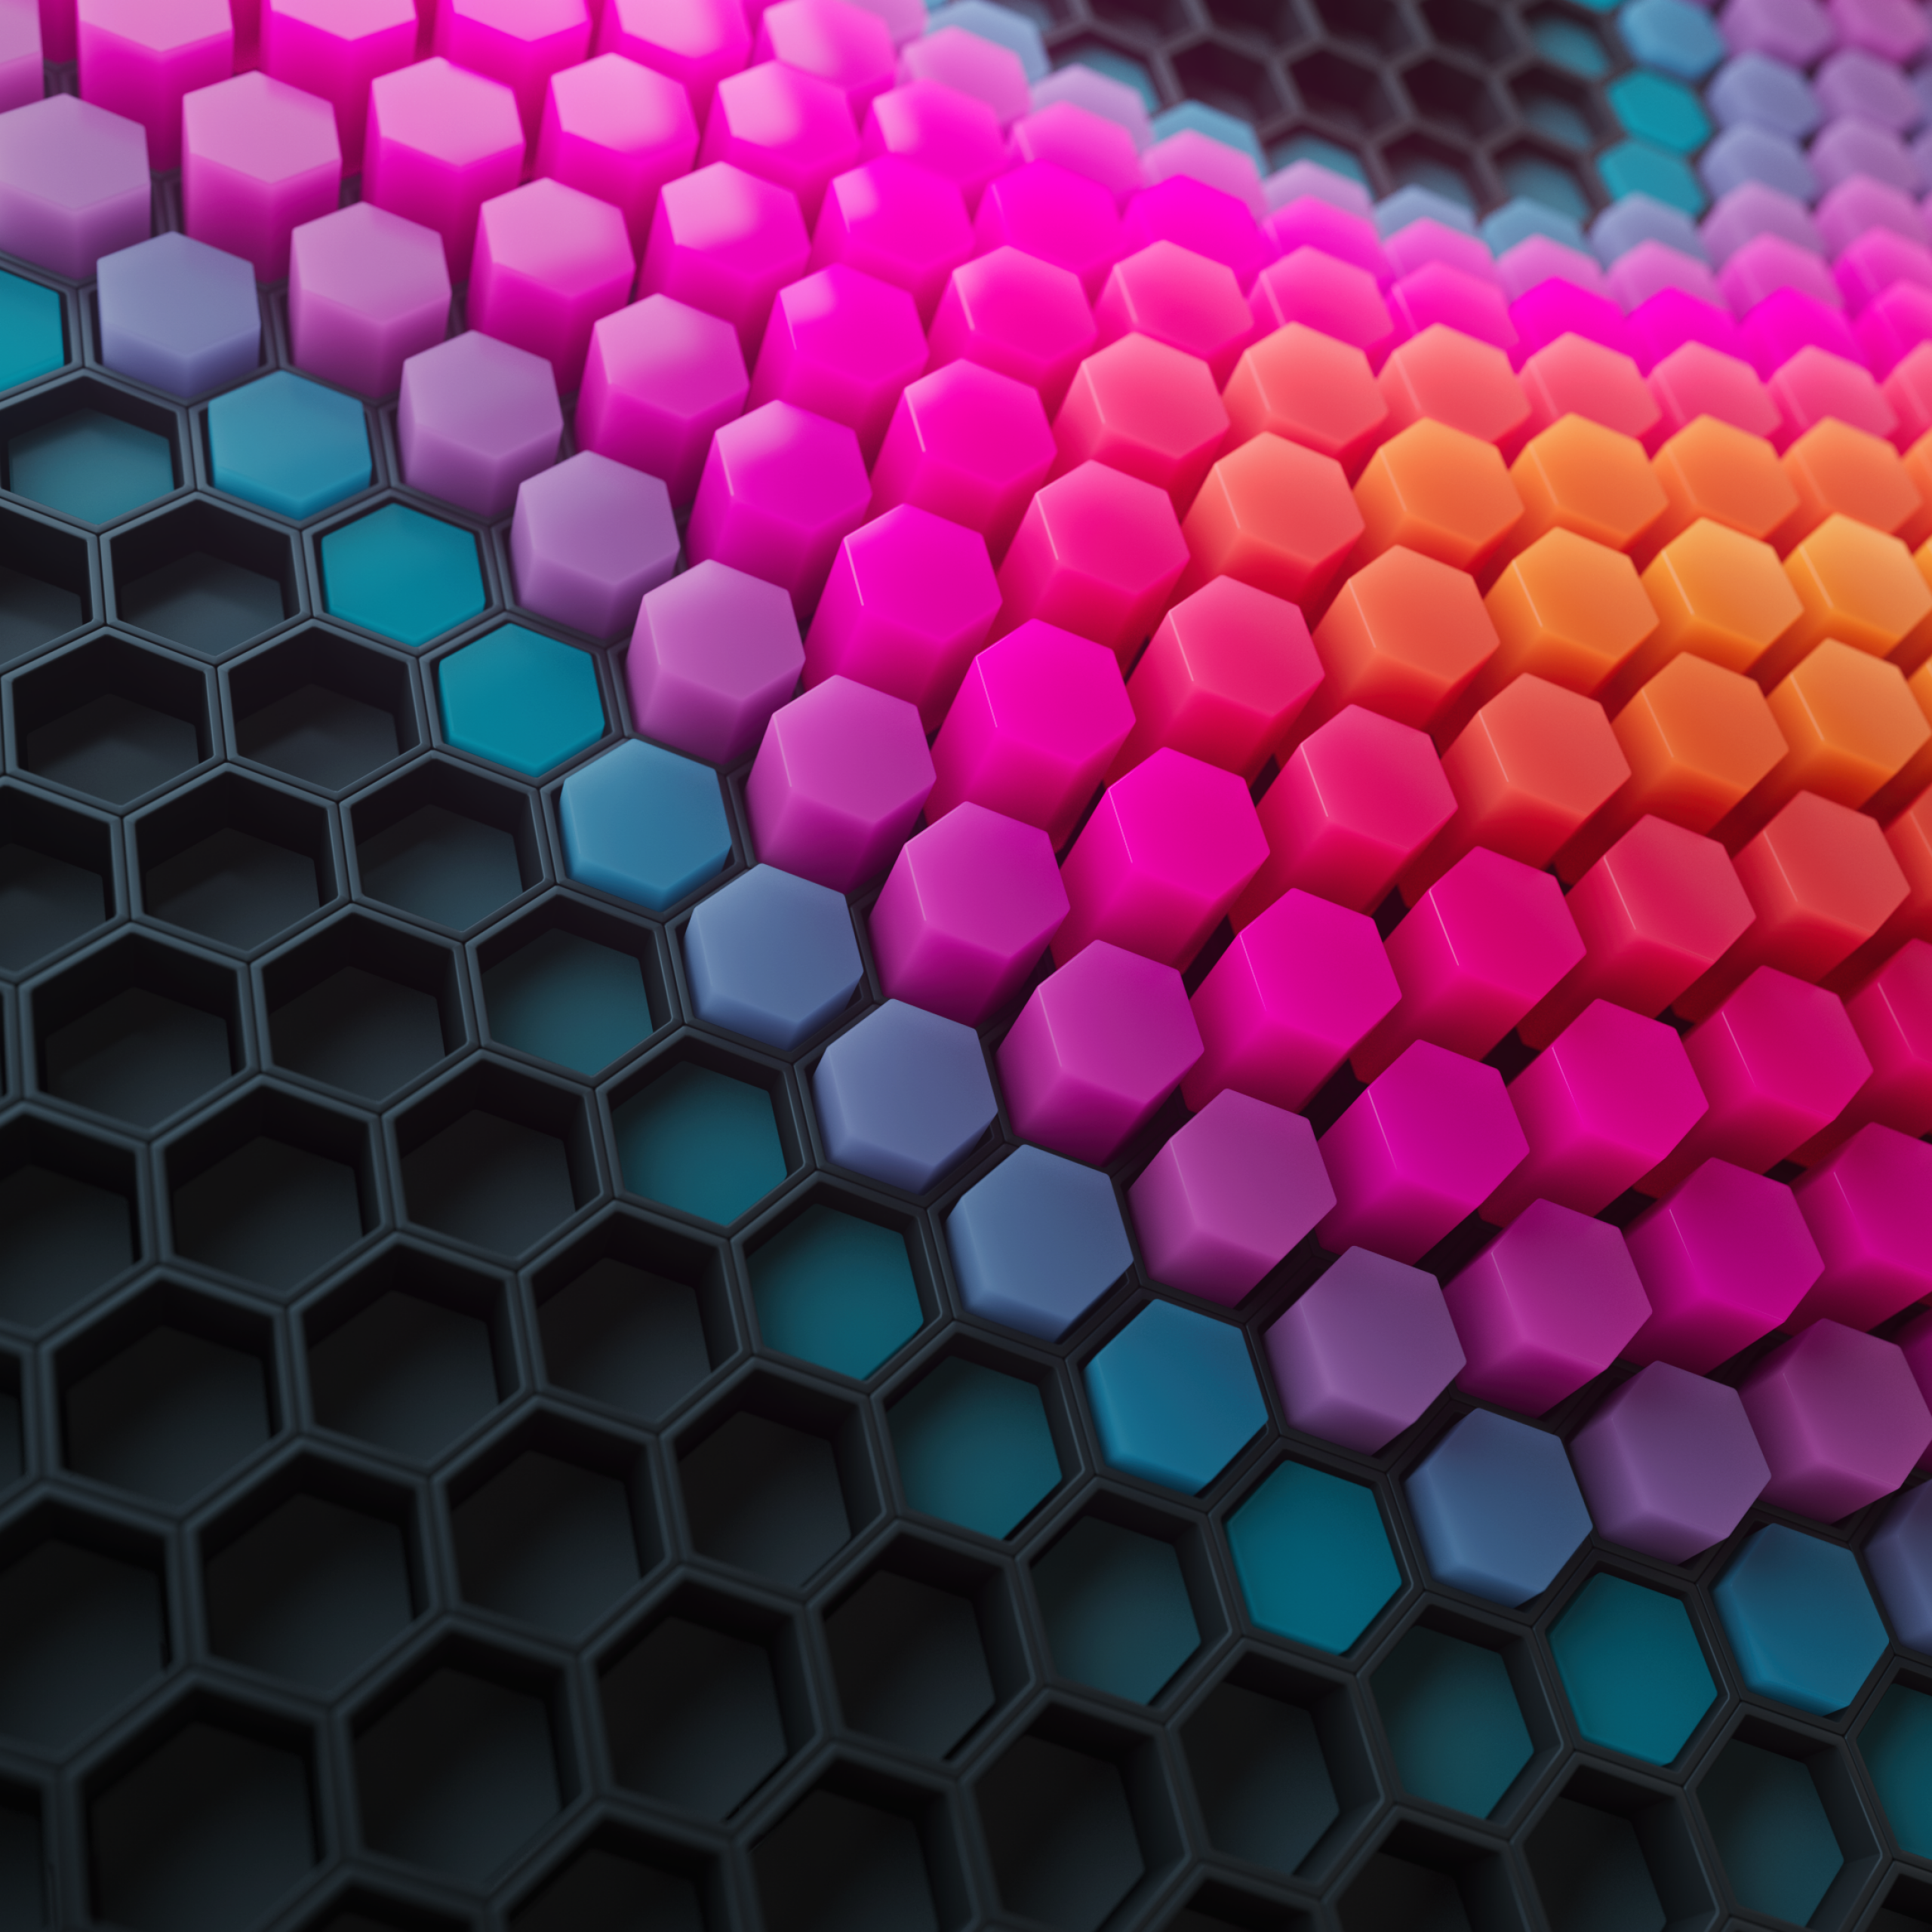 Hexagons Wallpaper 4K, Patterns, Abstract, #2286